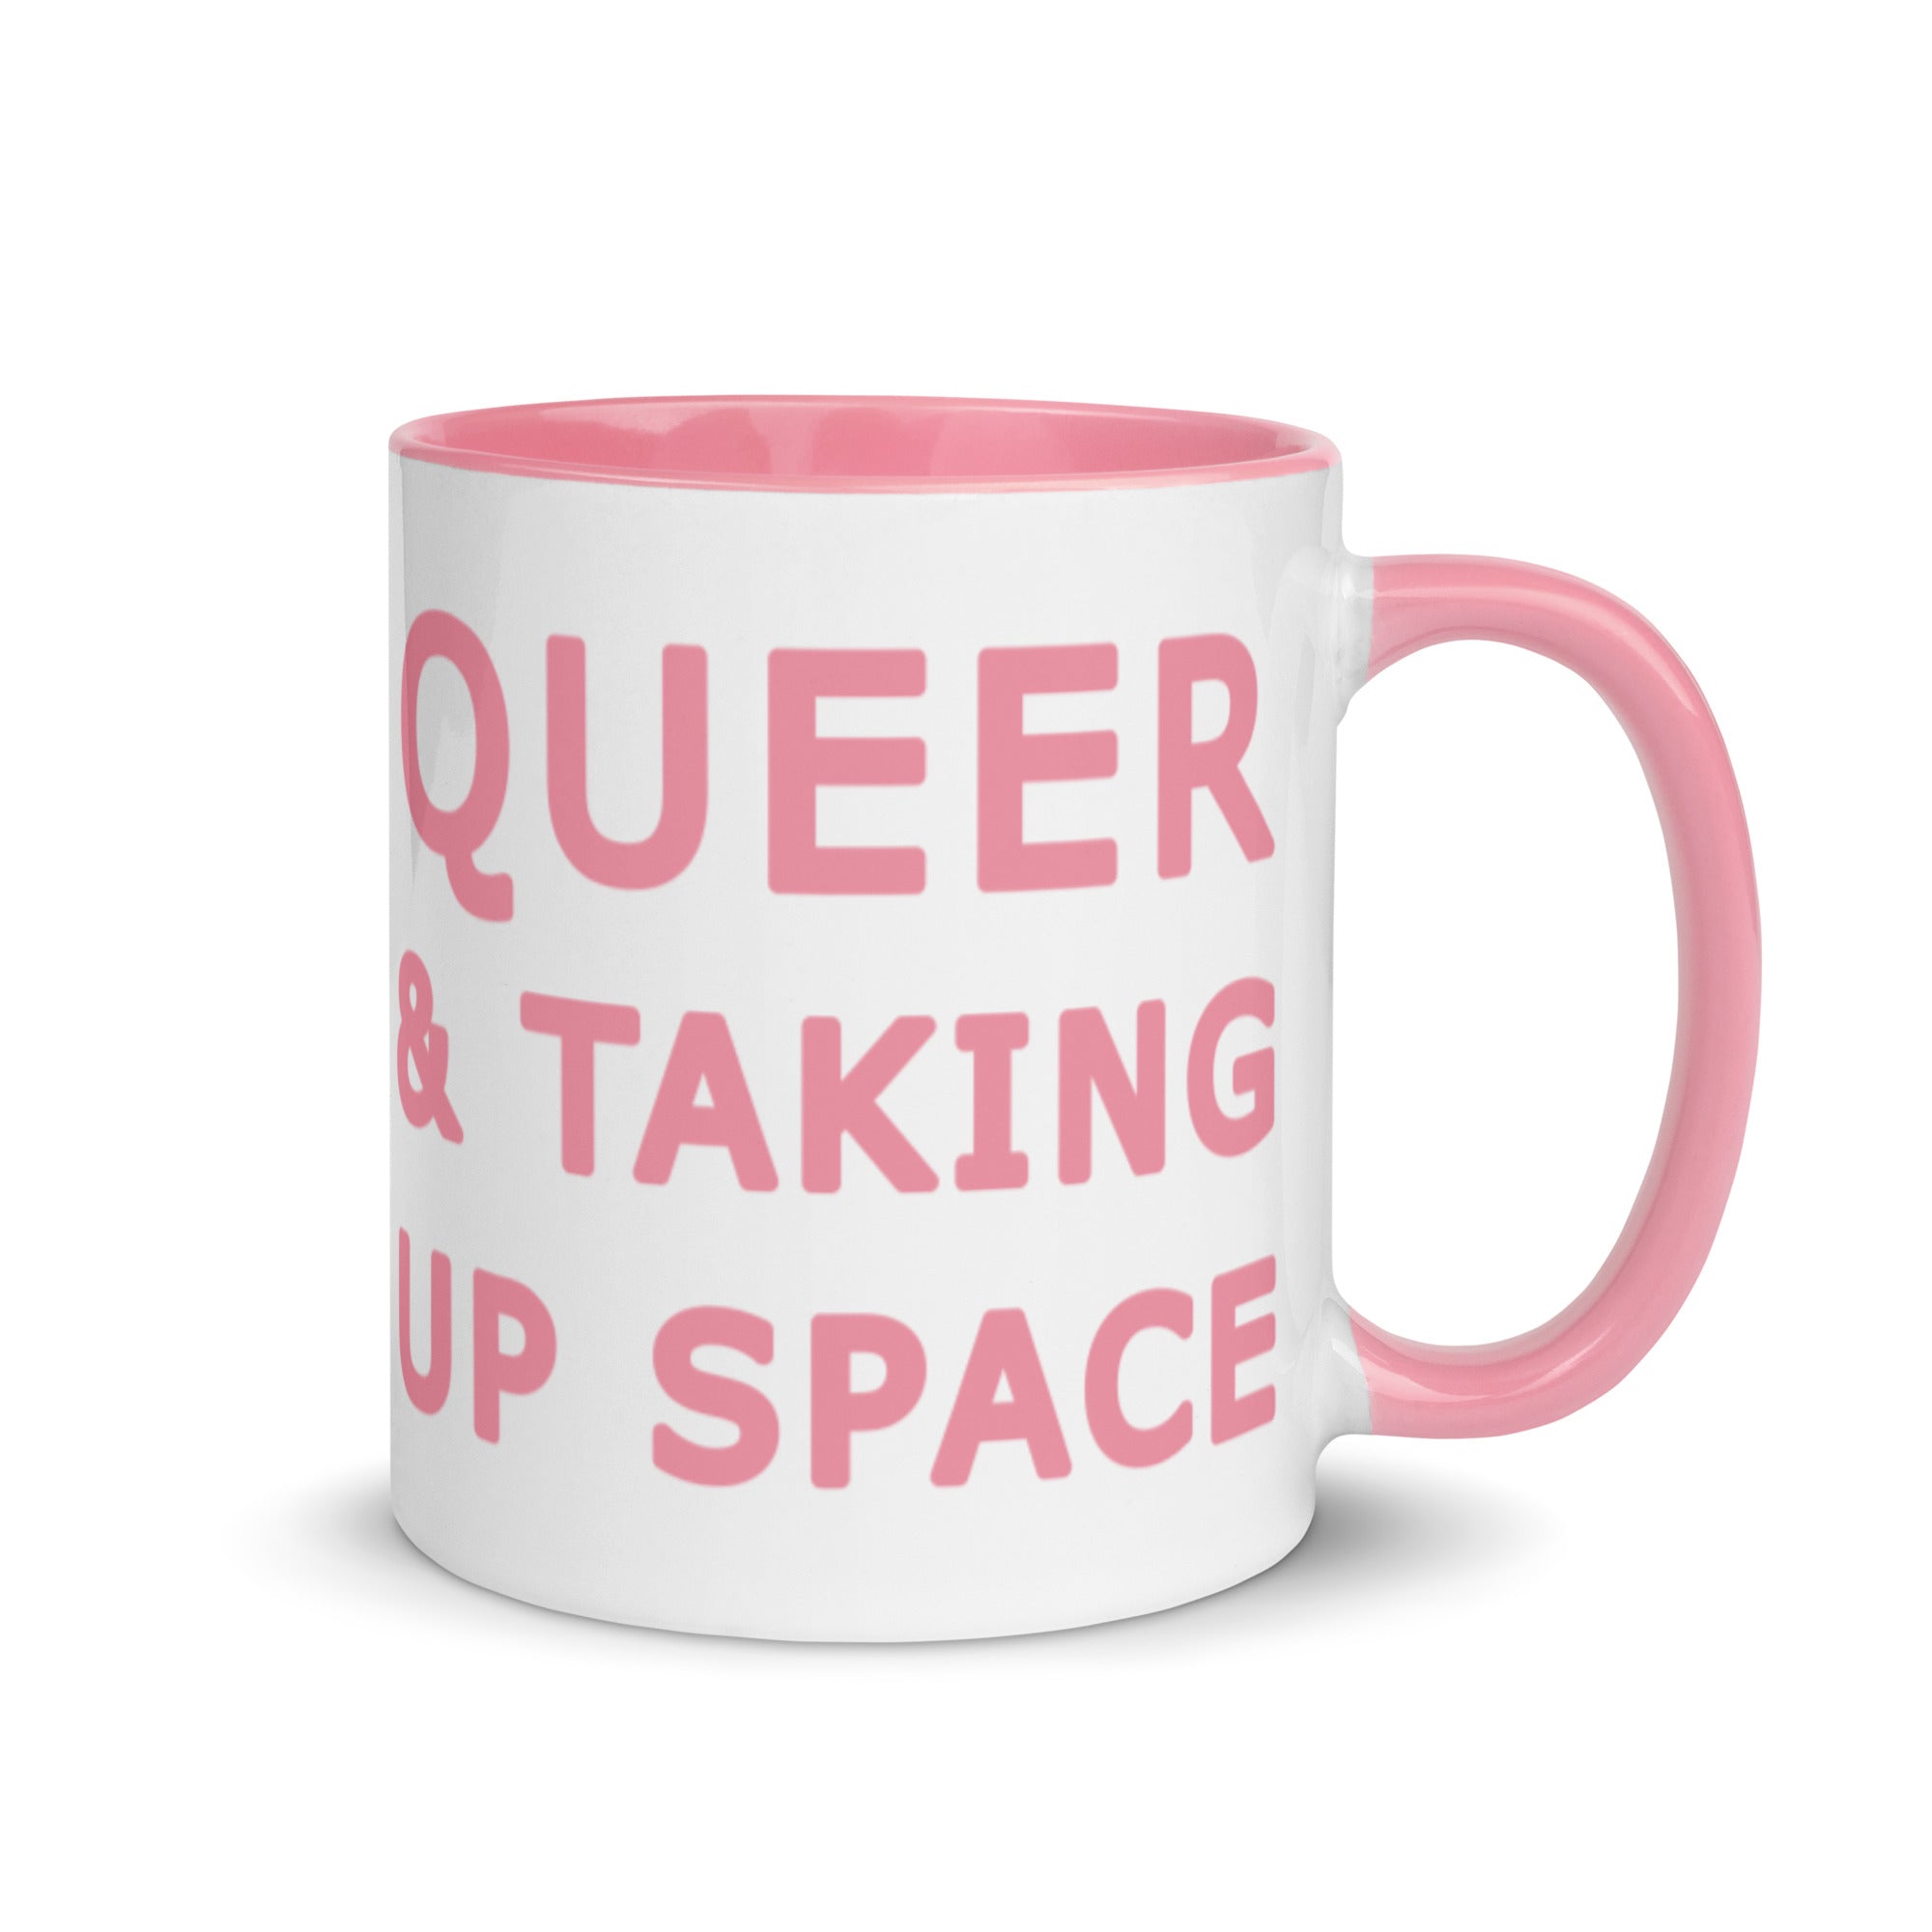 Queer & Taking Up Space Blue, Orange, Pink, Black Or Yellow Mug